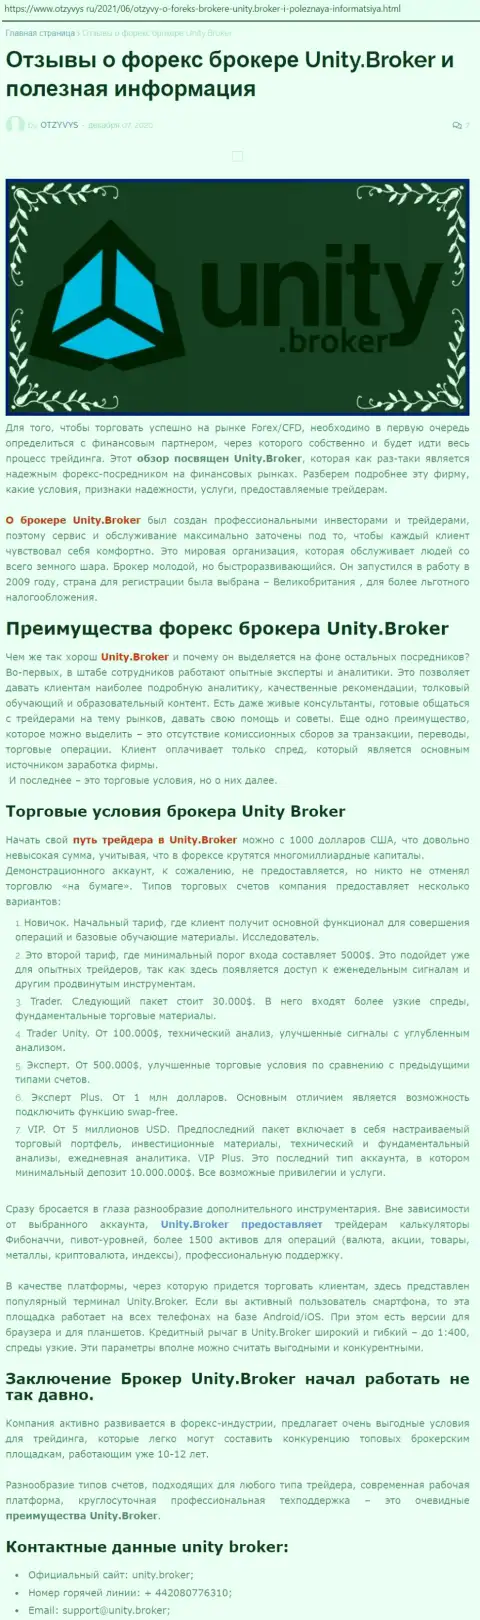 Статья об Форекс-организации Unity Broker на веб-сервисе отзывус ру